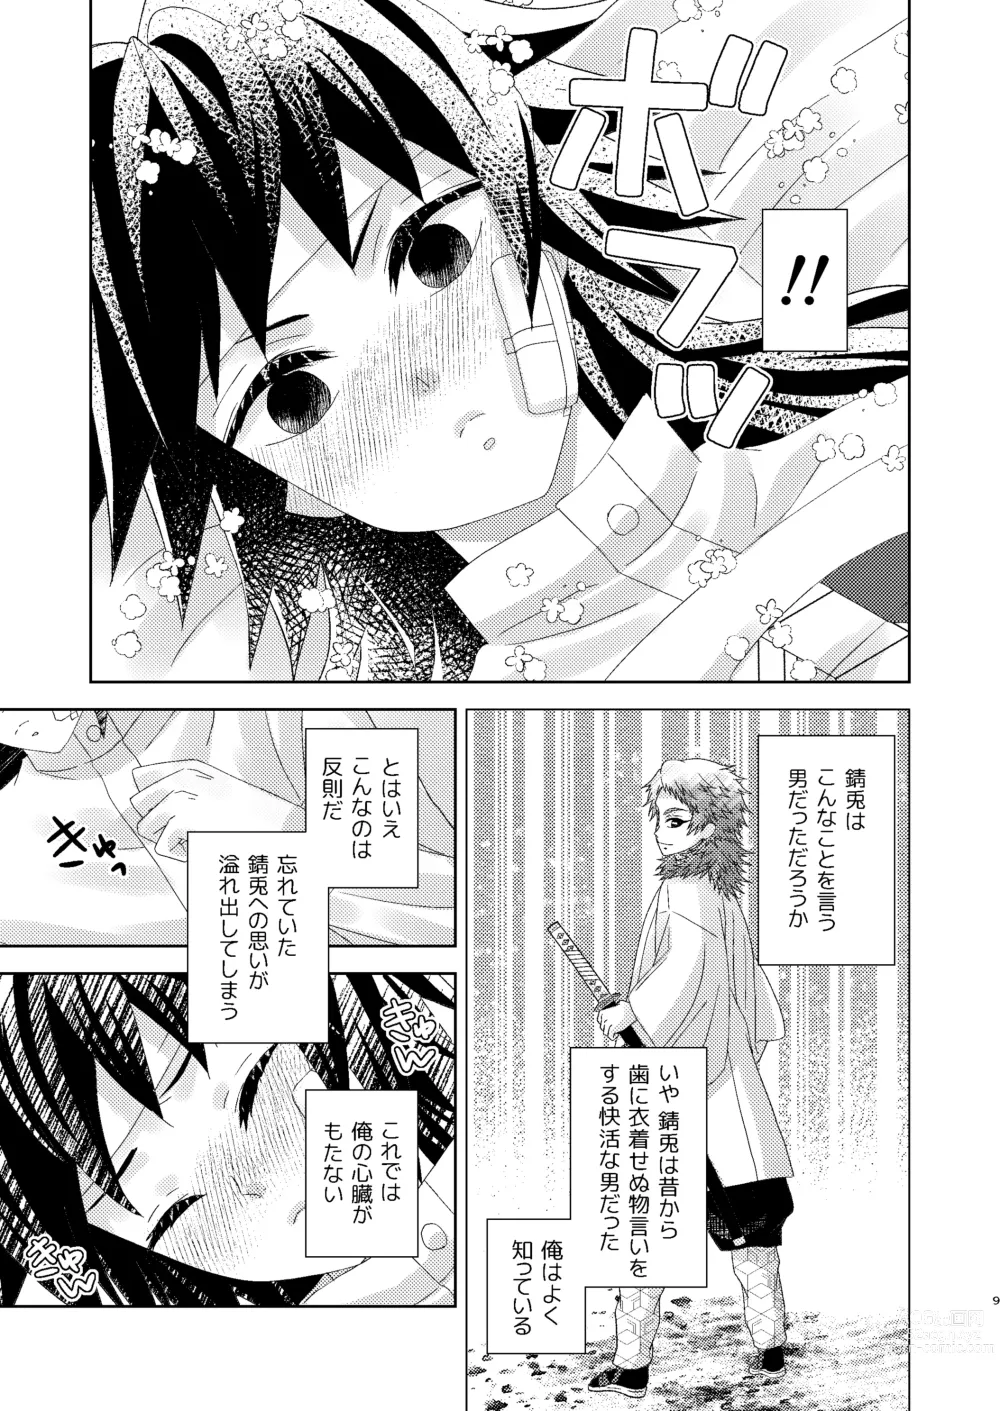 Page 8 of doujinshi Yuurei Kareshi no Koiwazurai